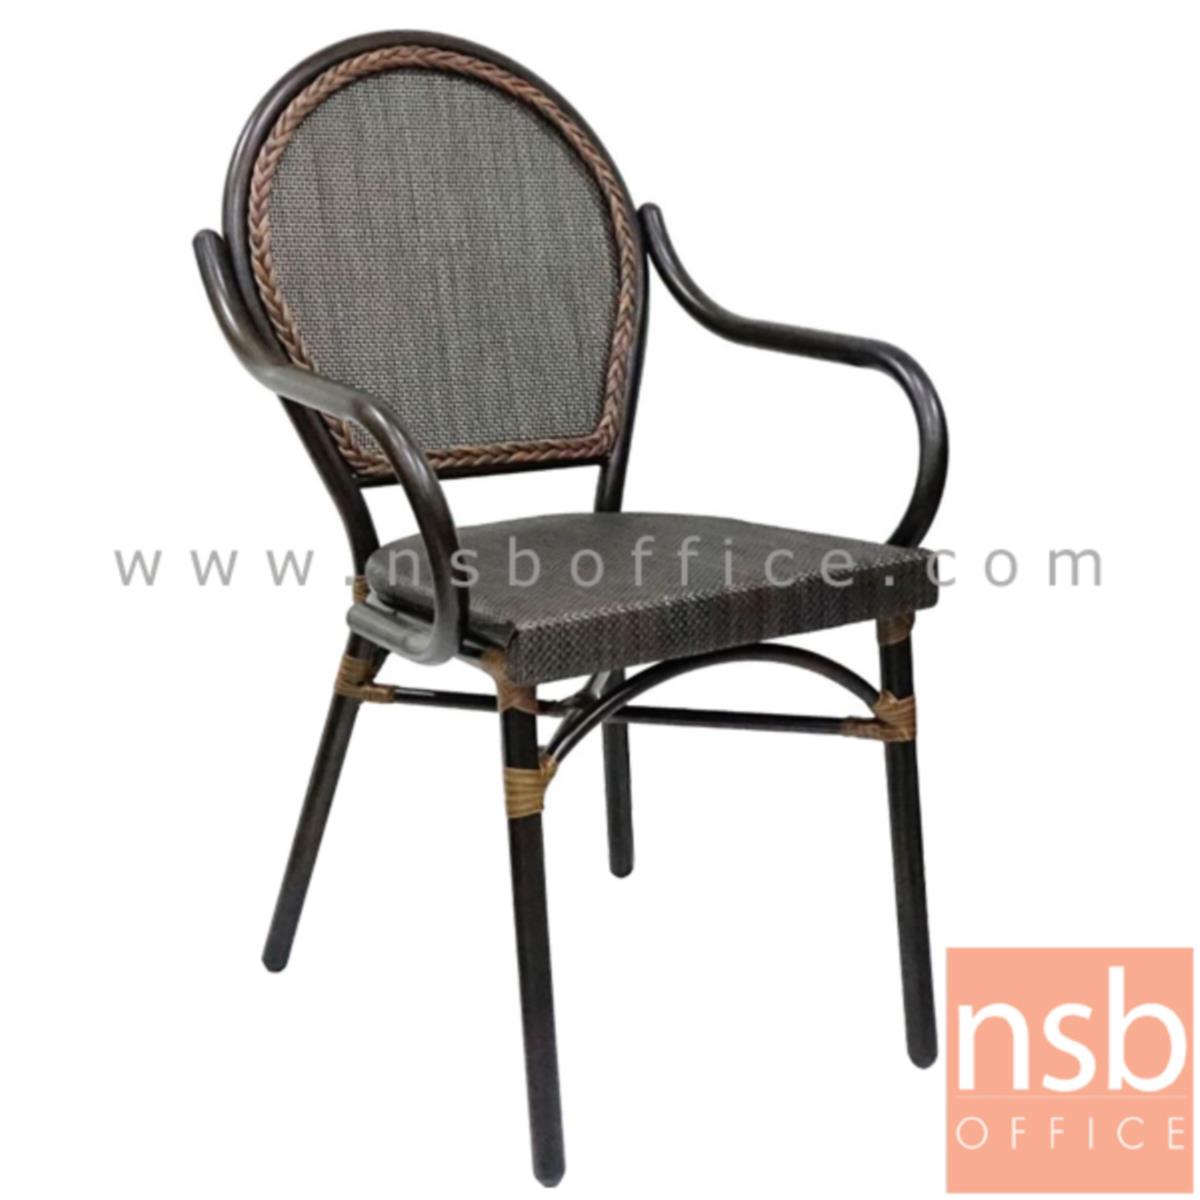 G08A226:เก้าอี้สนามหวายเทียมสาน โครงเหล็ก รุ่น Basic 1 มีท้าวแขน   